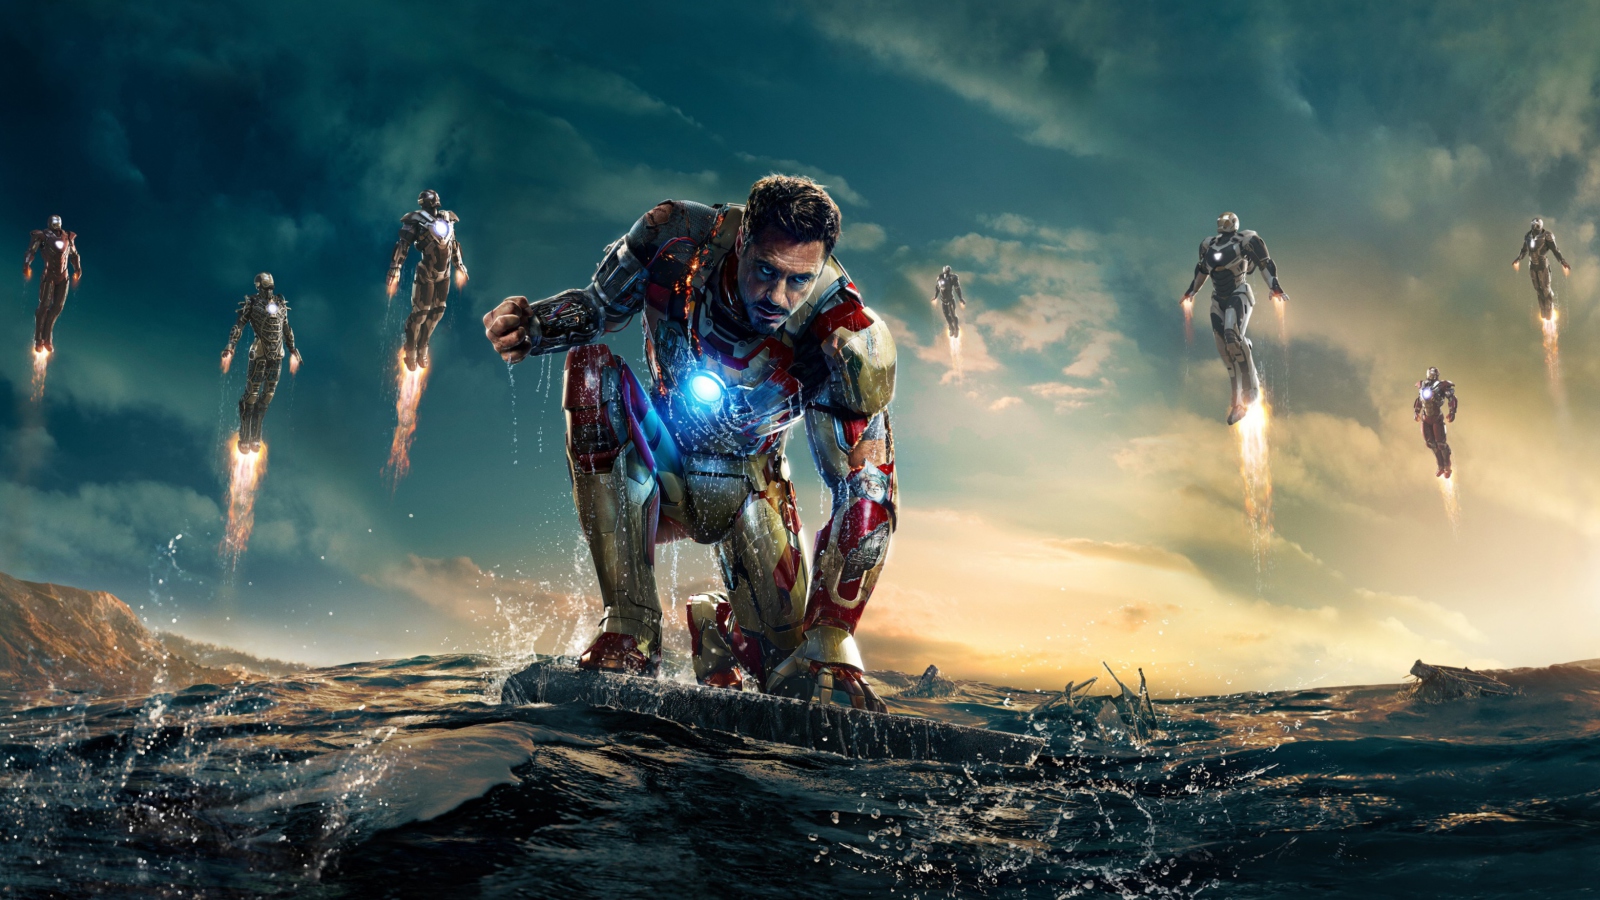 Обои Robert Downey Jr. As Iron Man 1600x900